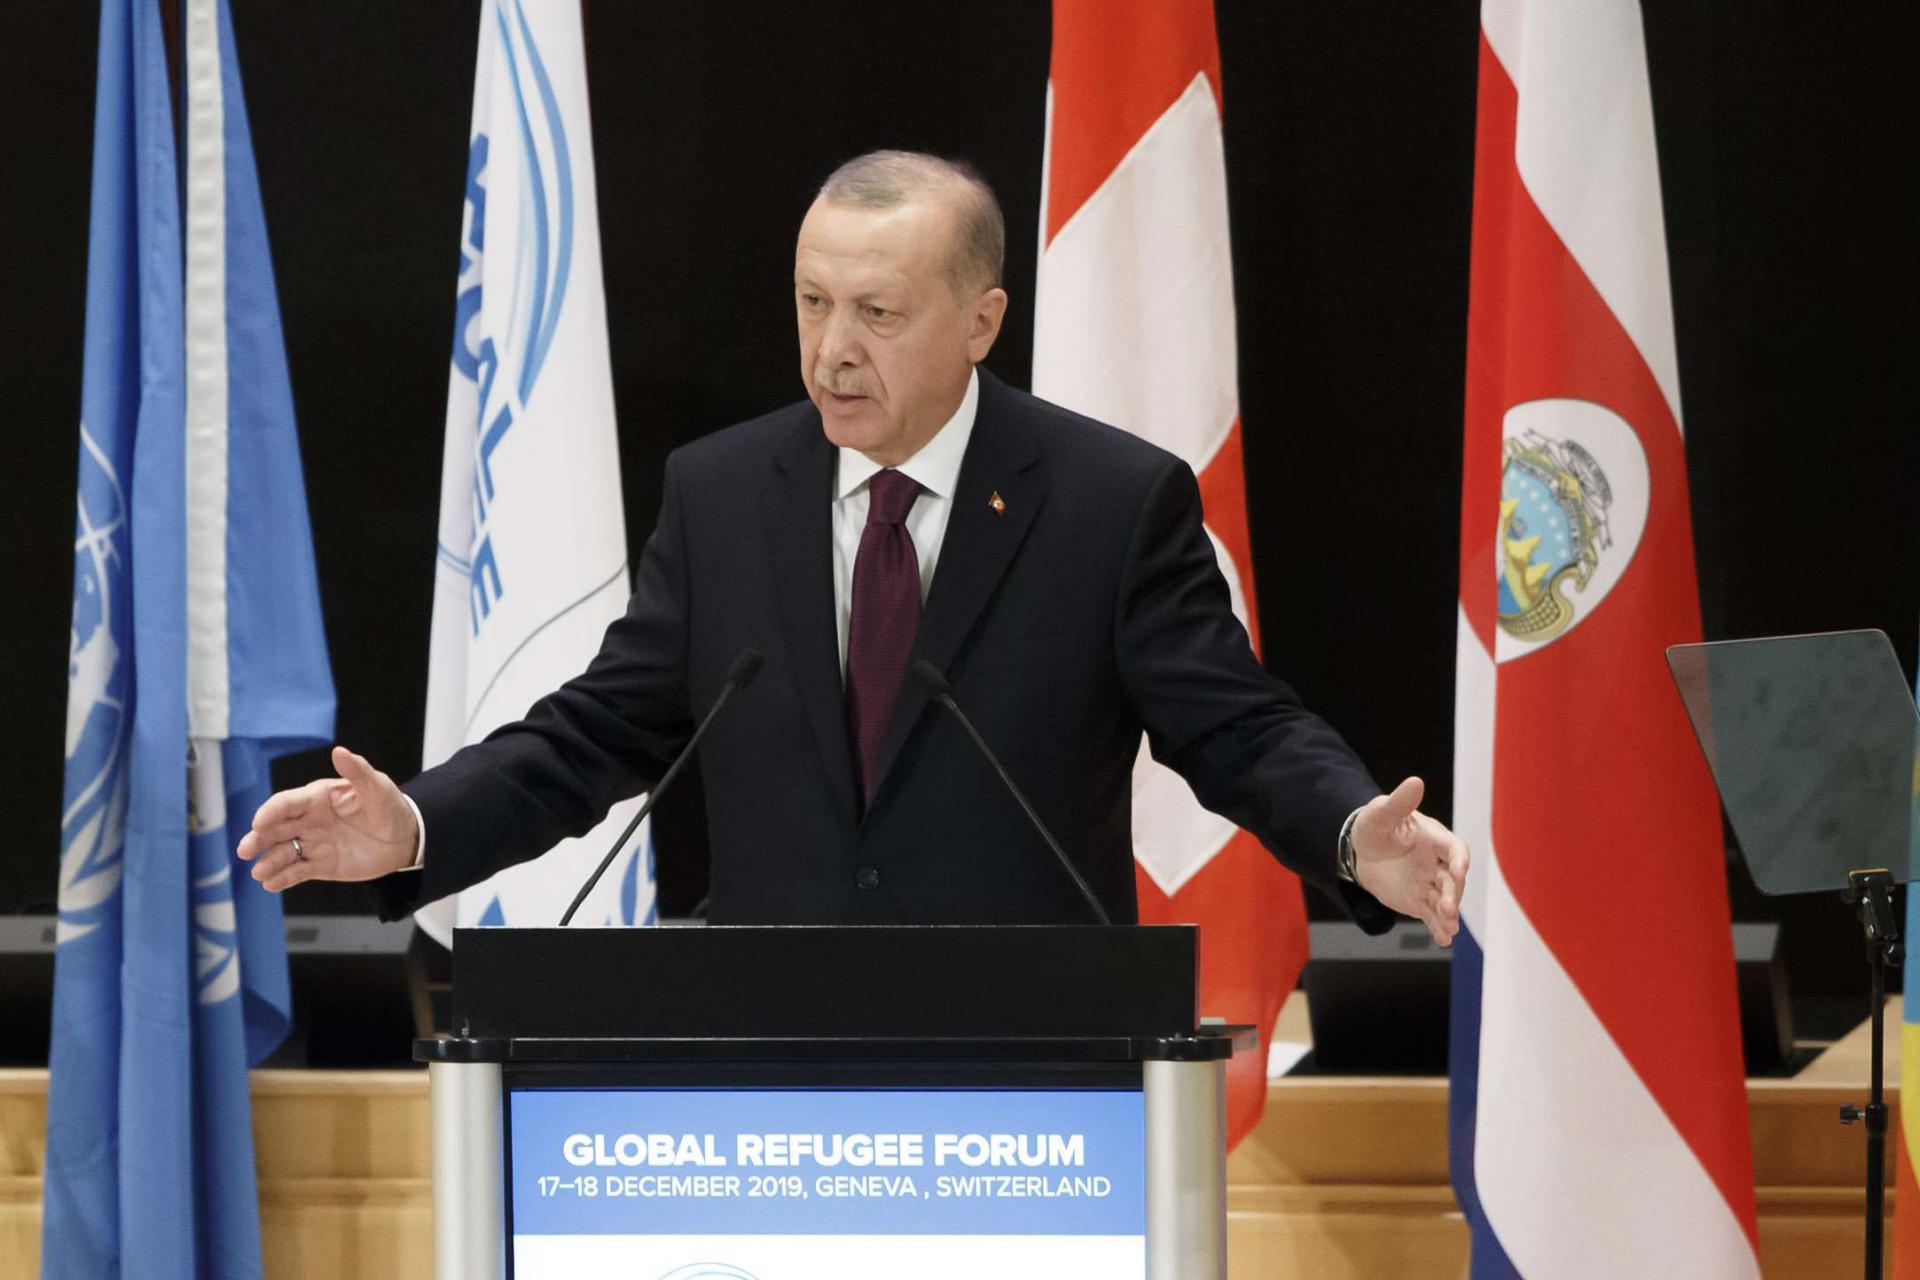 أردوغان يزعم تأمين عودة كريمة للاجئين ليبرر تدخله شمال سوريا